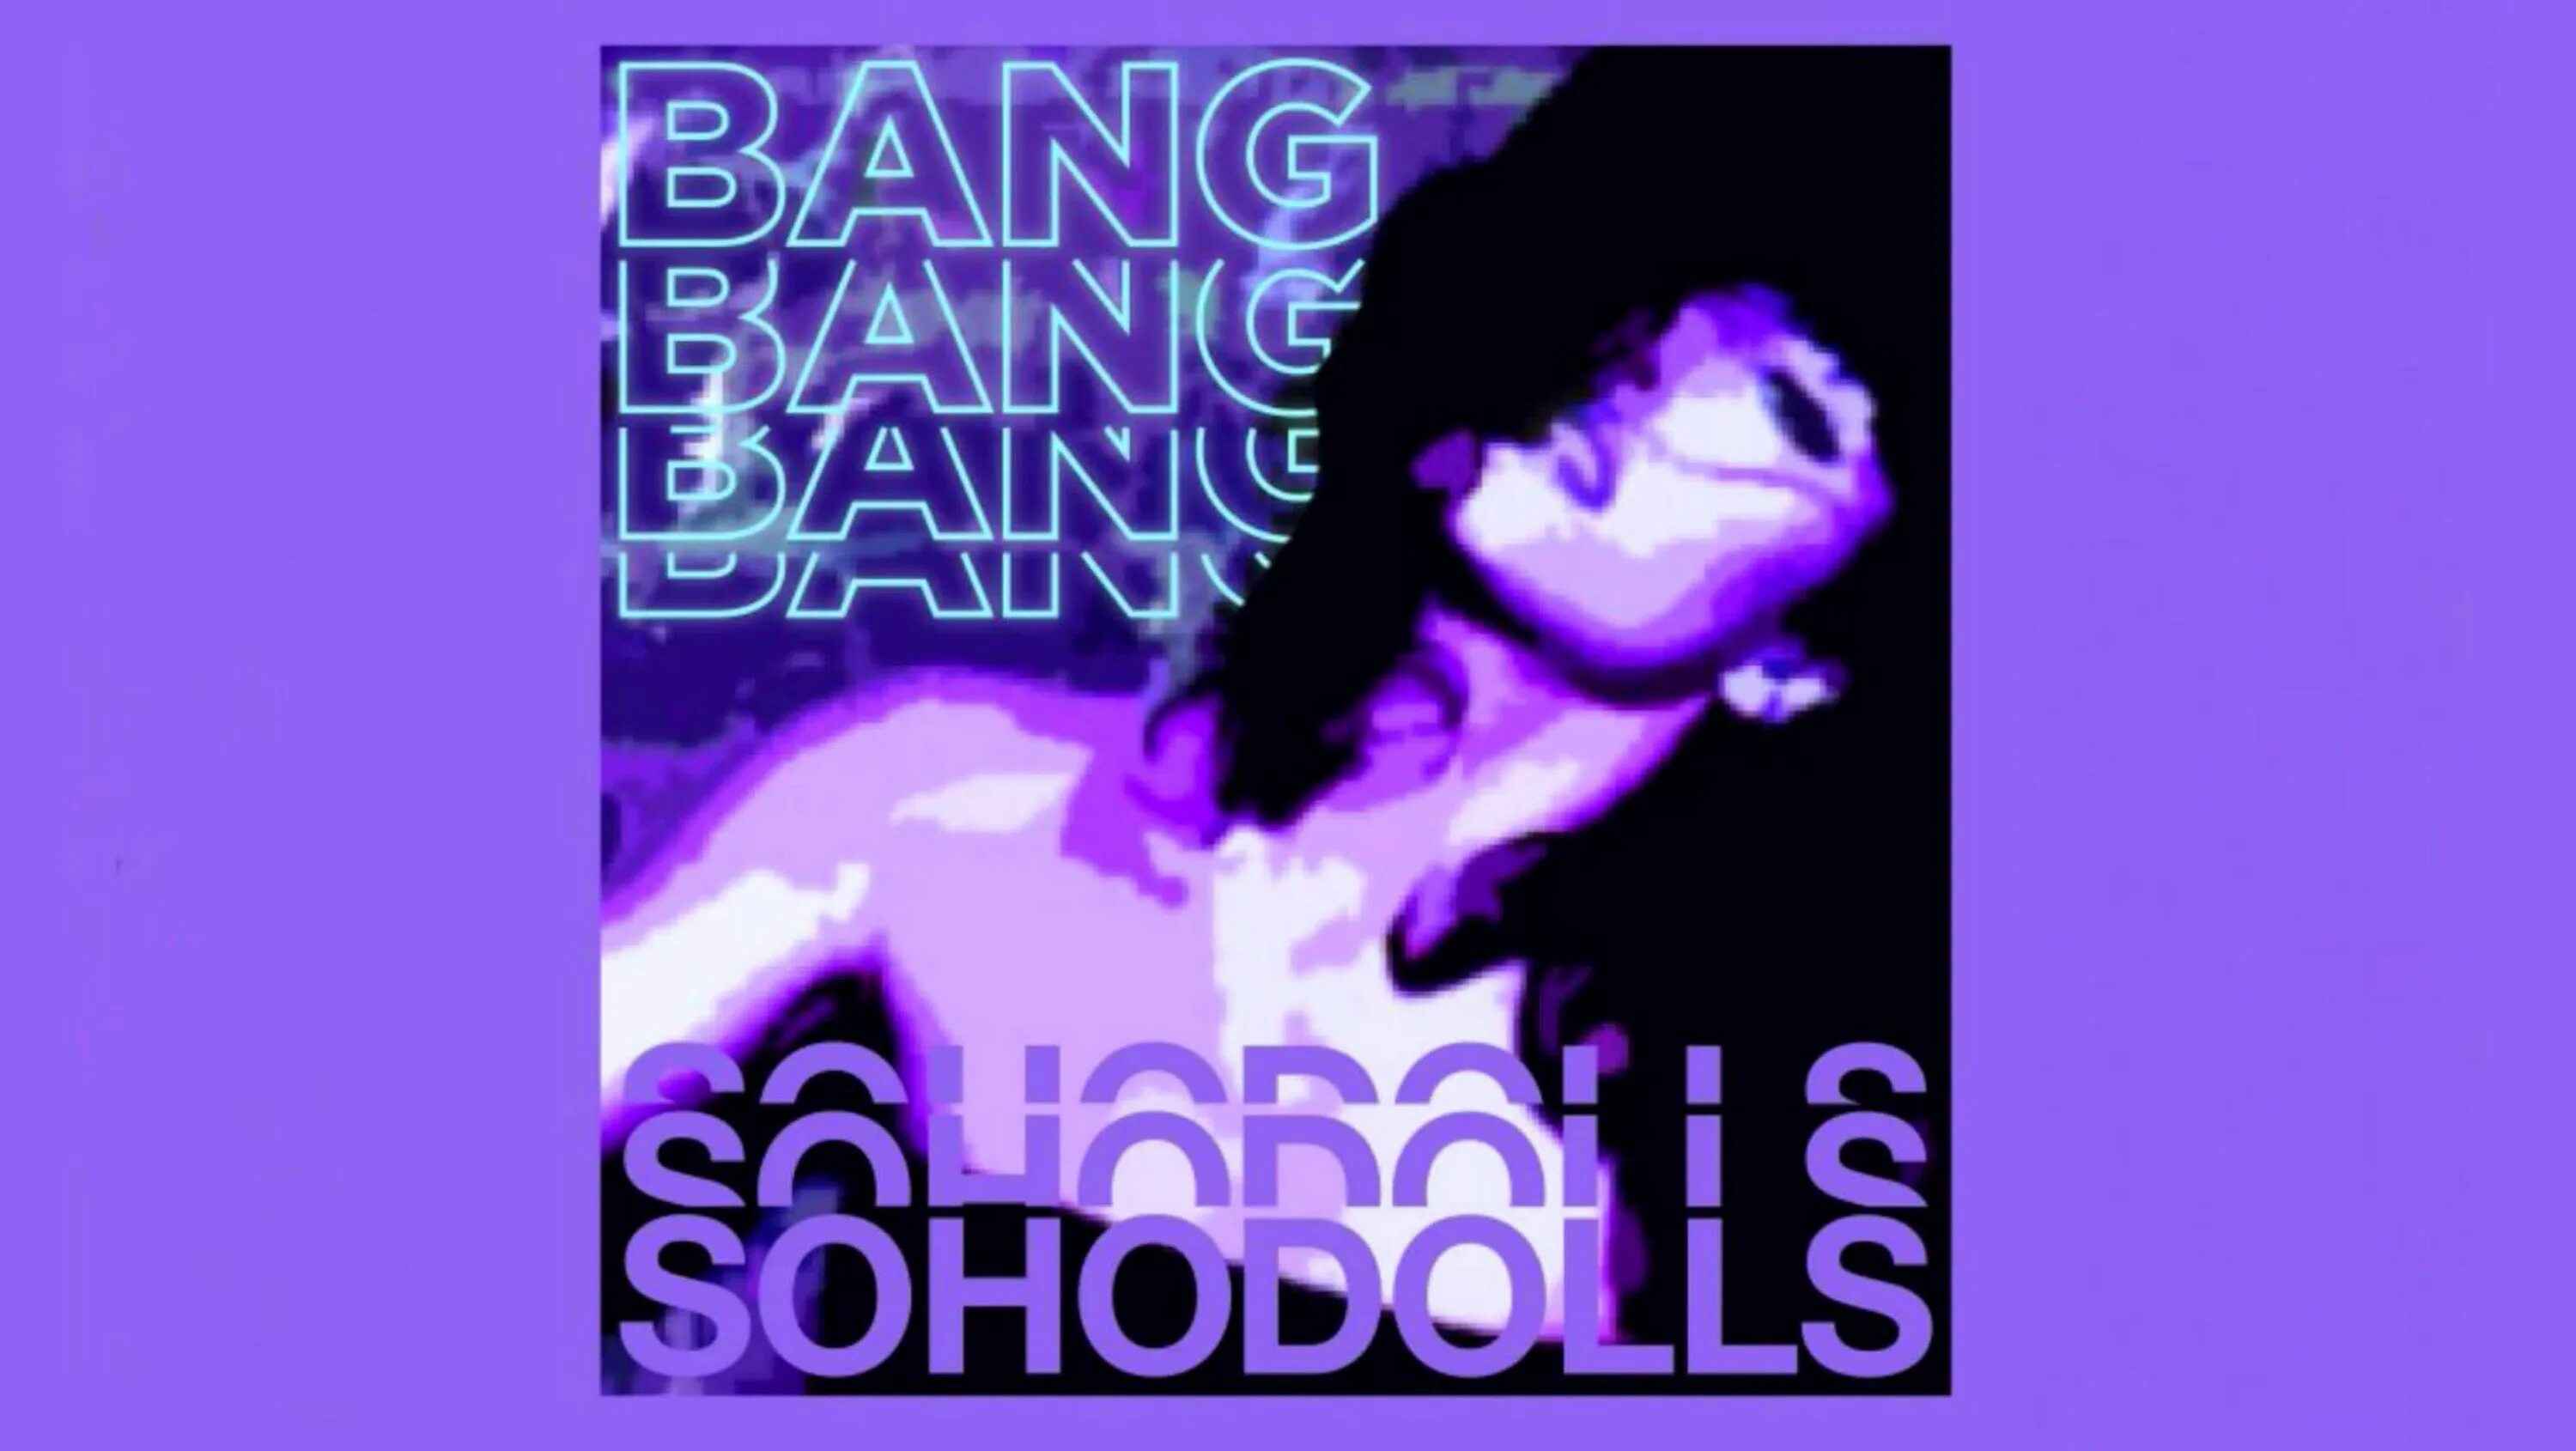 Blink bang bang born. Bang Bang Bang Sohodolls обложка. Песня Bang Bang Bang. Bang Bang Bang Bang Sohodolls песни. Песня Bang Bang Speed up.